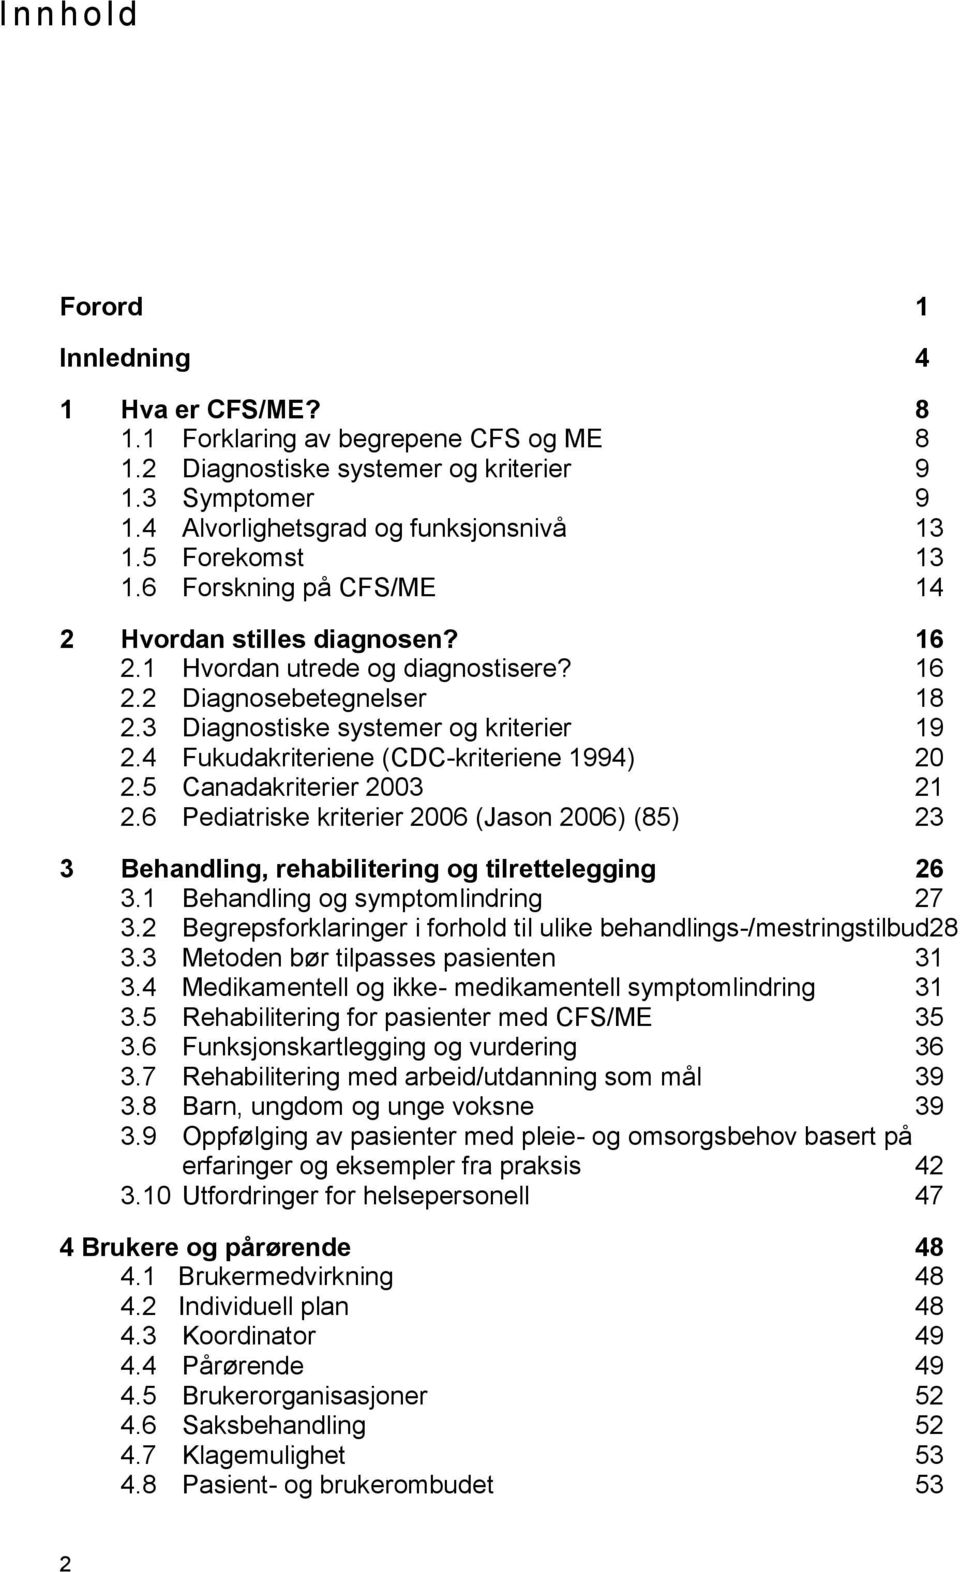 4 Fukudakriteriene (CDC-kriteriene 1994) 20 2.5 Canadakriterier 2003 21 2.6 Pediatriske kriterier 2006 (Jason 2006) (85) 23 3 Behandling, rehabilitering og tilrettelegging 26 3.